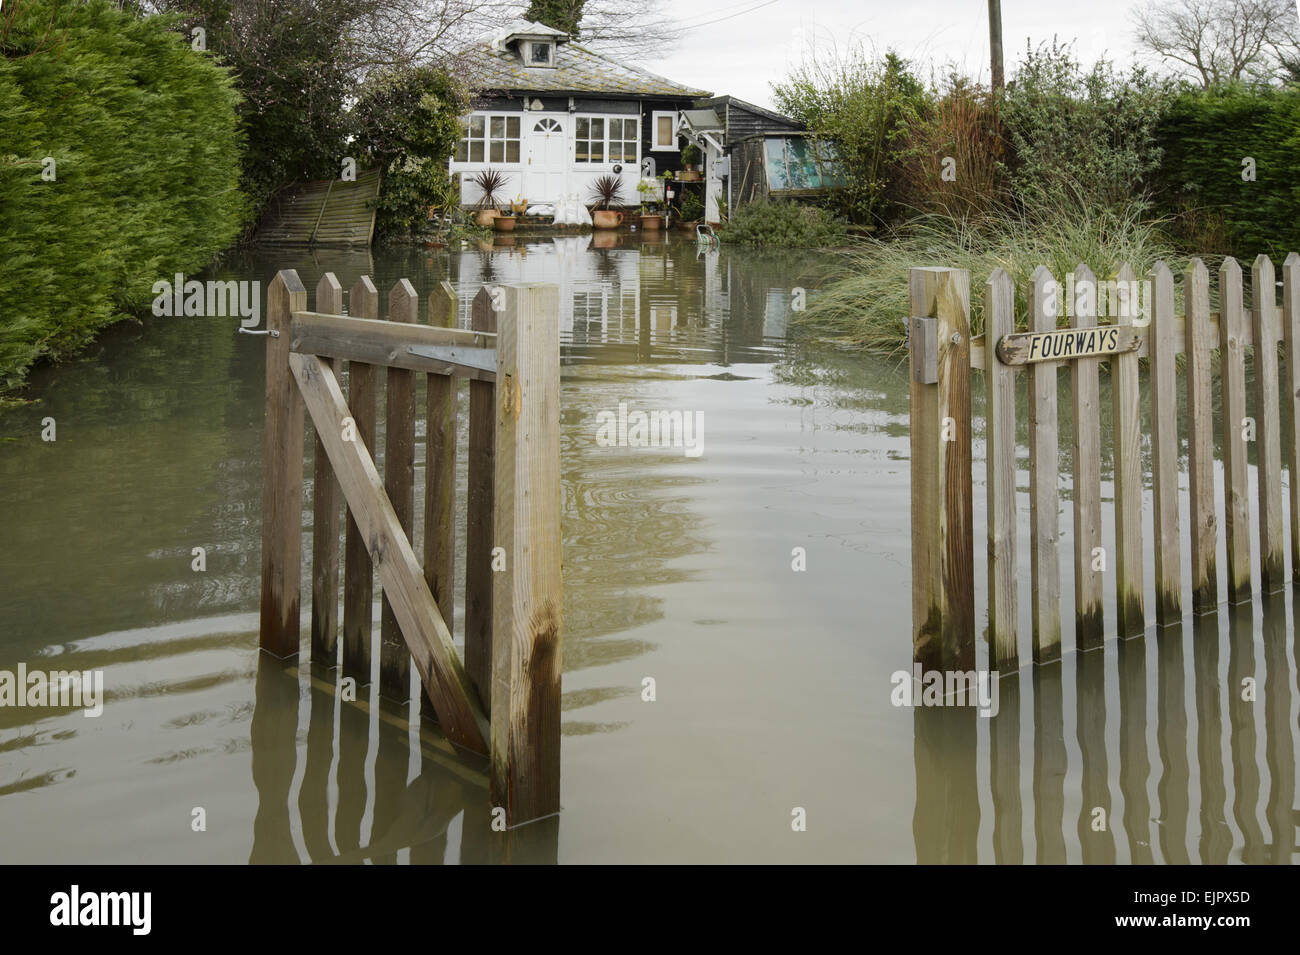 L'eau de l'inondation en chambre jardin pendant les inondations de la rivière, de la rivière Thames, Chertsey, Surrey, Angleterre, Février 2014 Banque D'Images